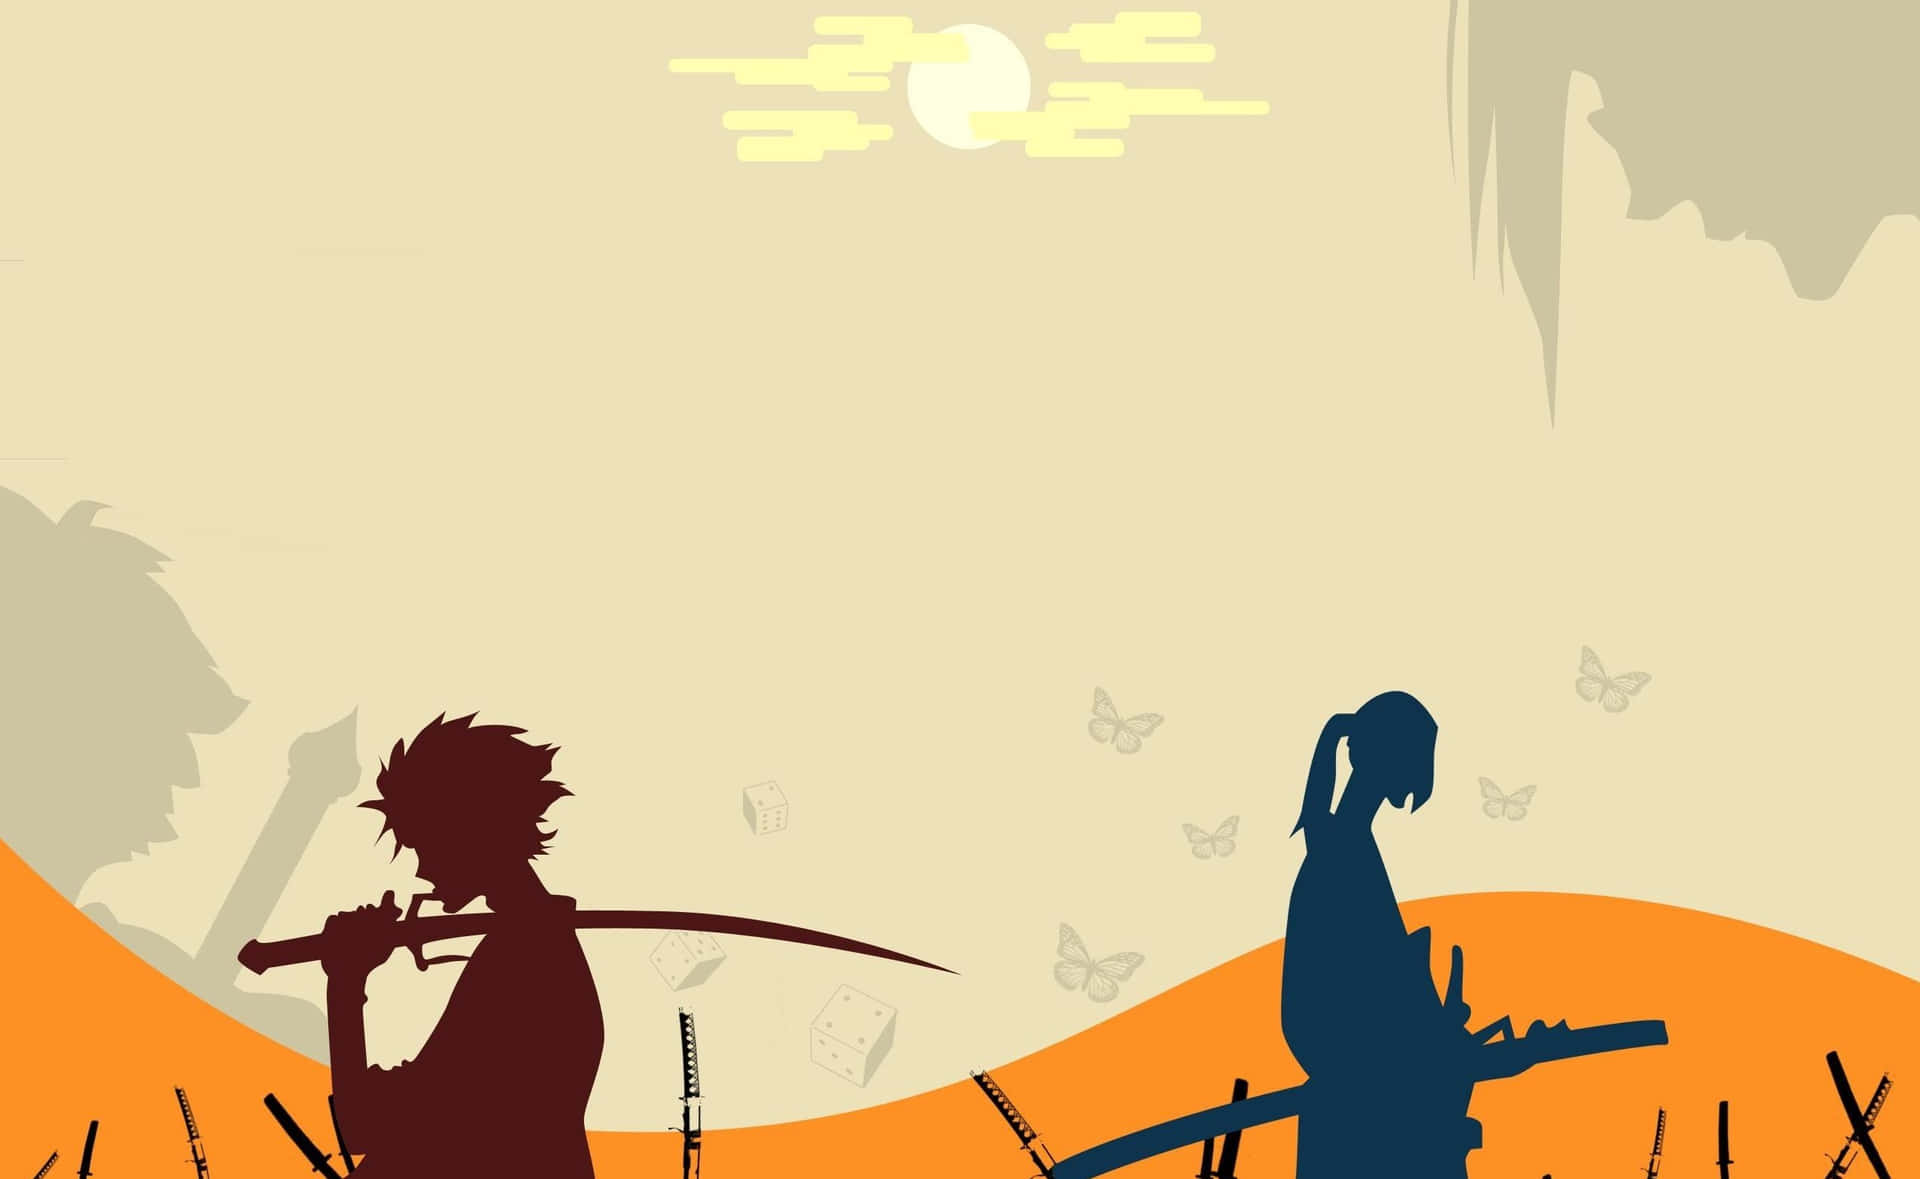 Personajede Anime Estilizado Con Una Paleta De Colores Amarillos Intensos. Fondo de pantalla